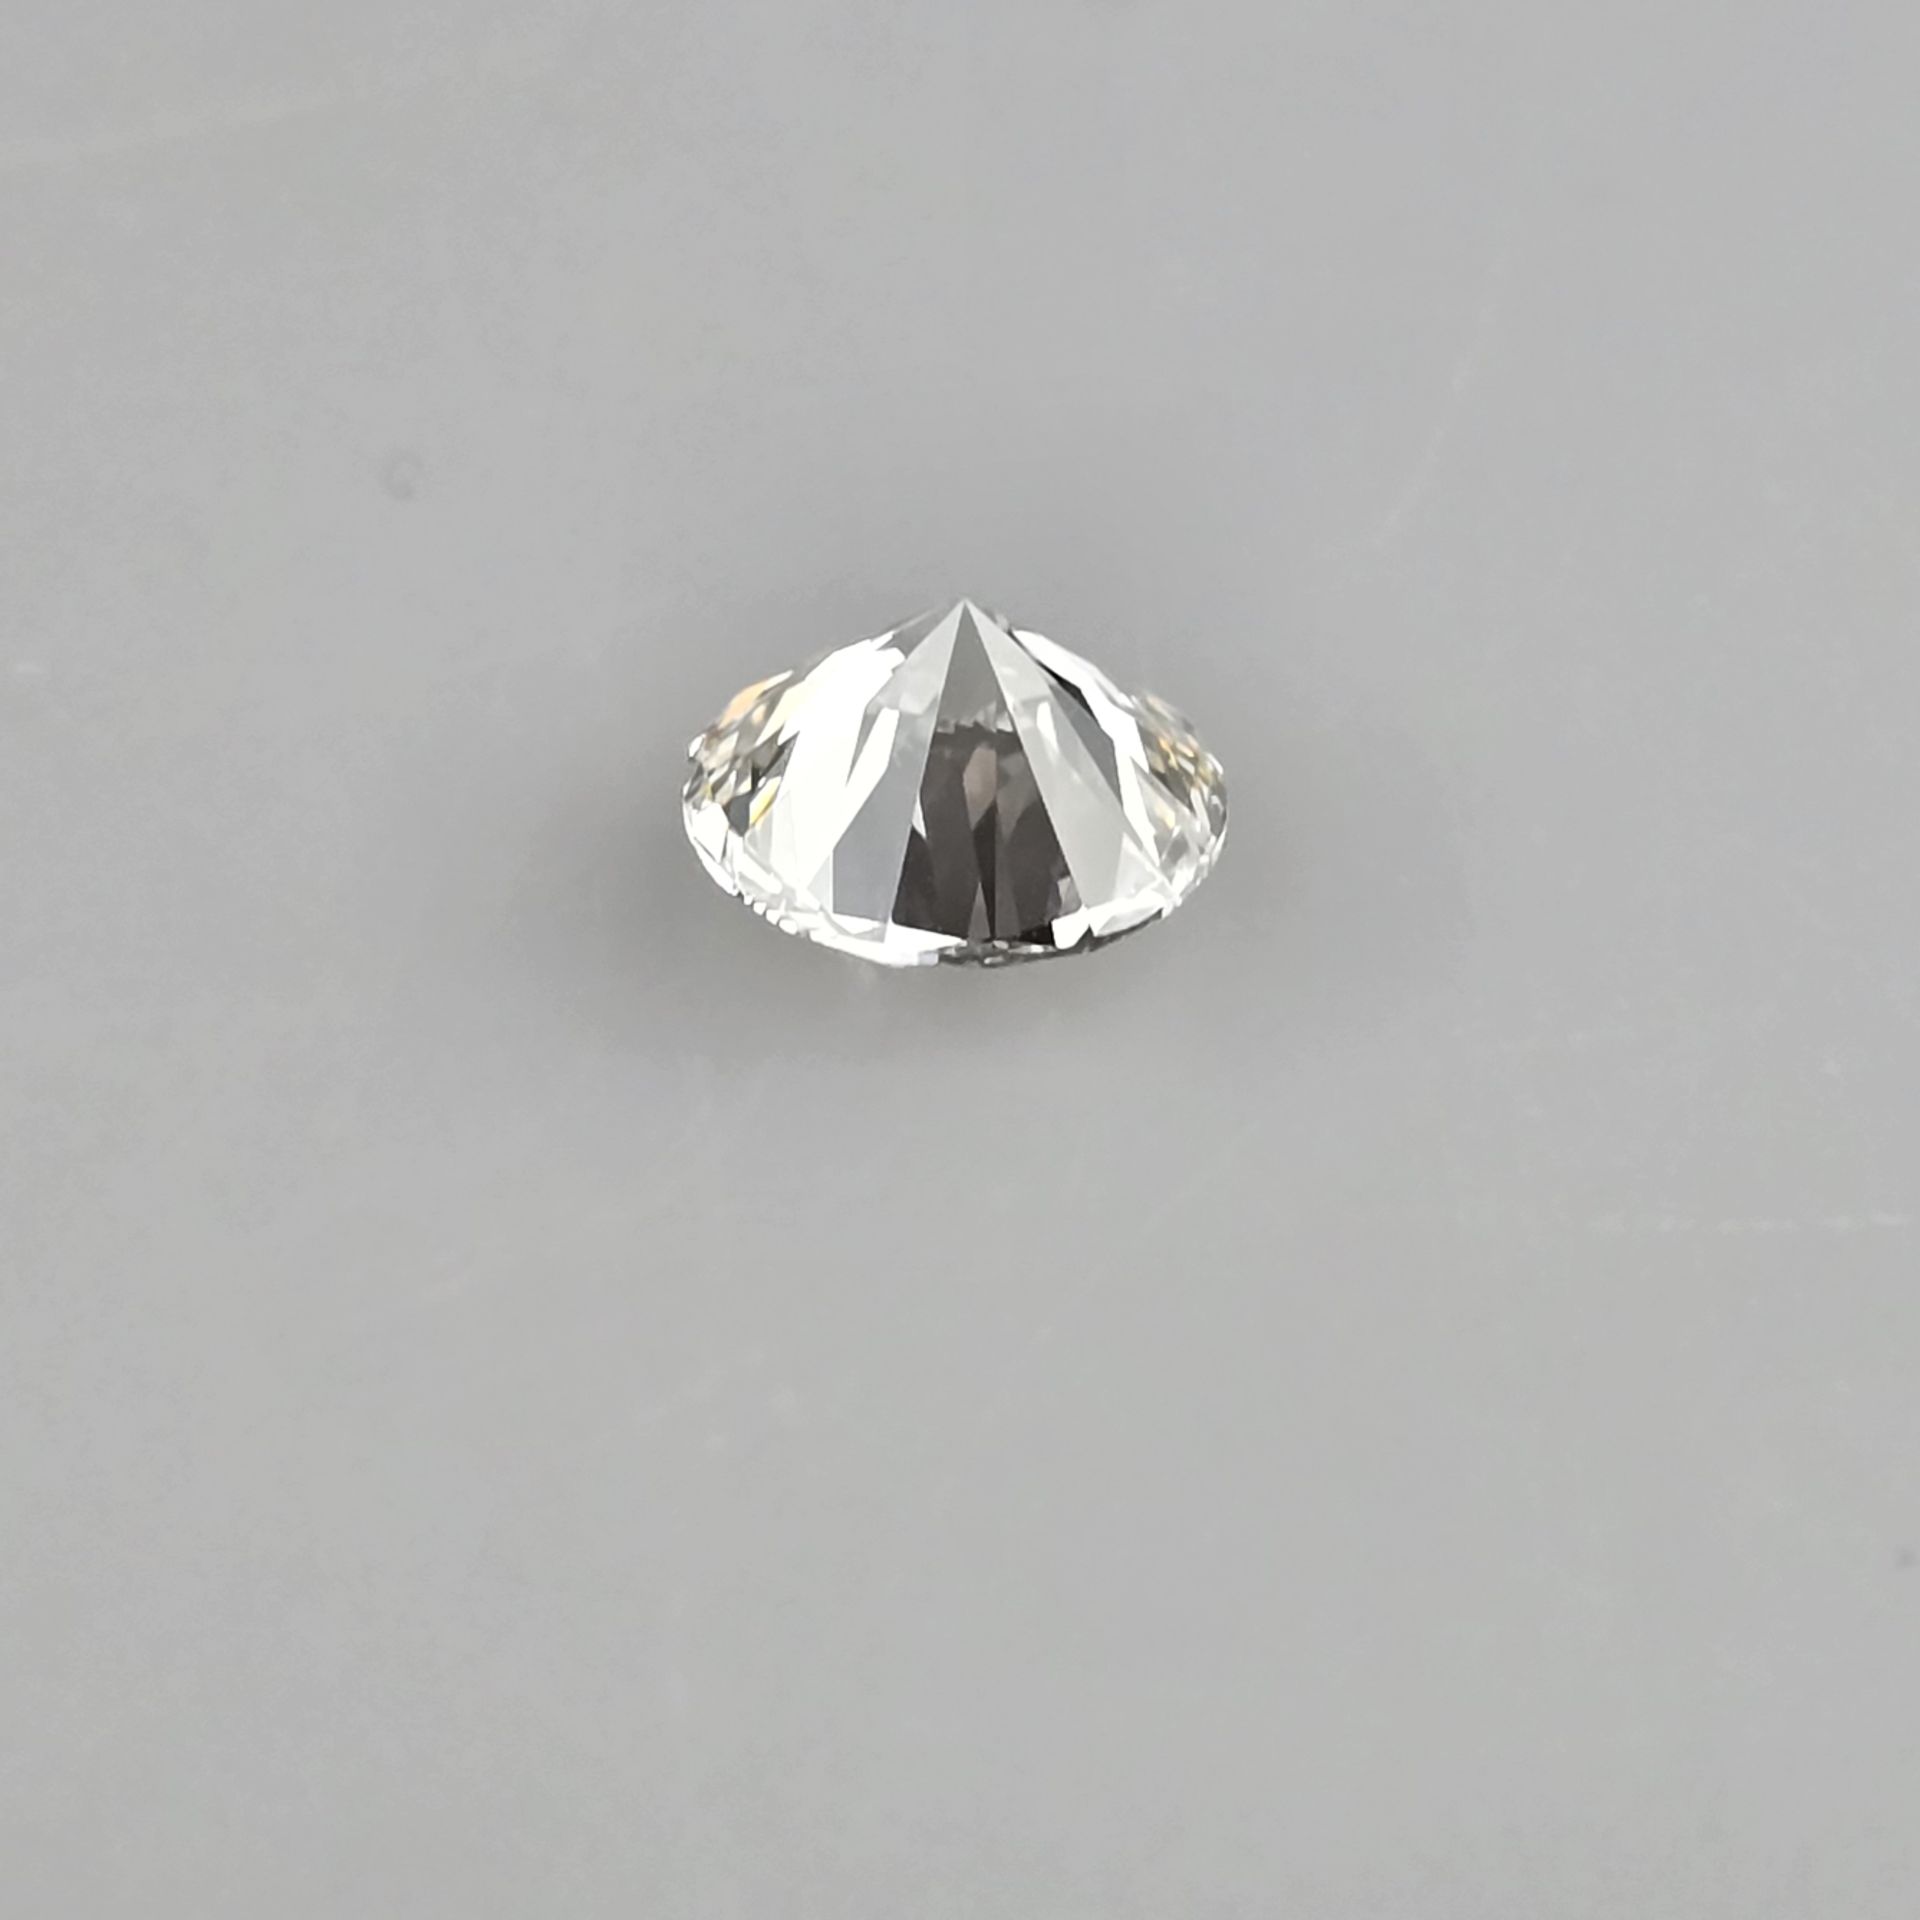 Loser Diamant von 3,03 ct. mit Lasersignatur - Labor-Brillant von idealer Qualität, Gewicht 3,03 ct - Bild 4 aus 8